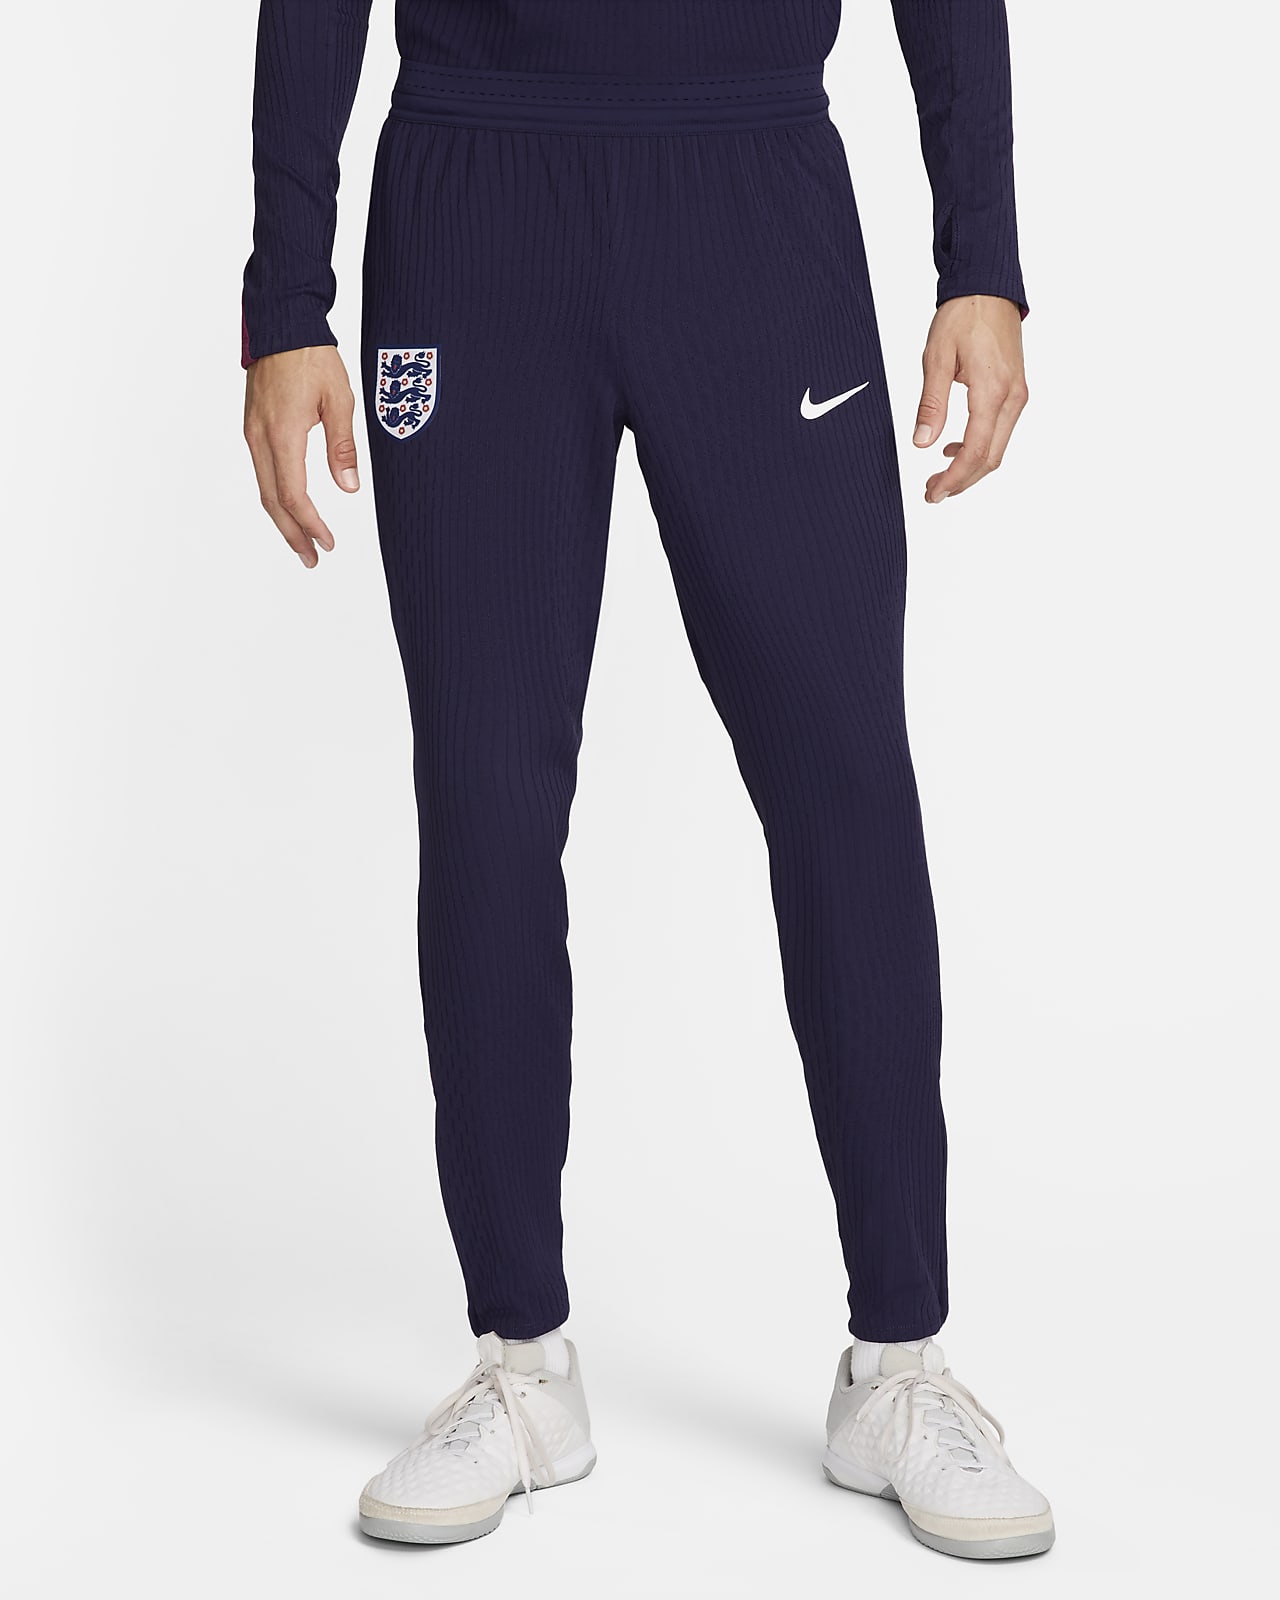 England Strike Elite Nike Dri-FIT ADV Fußballhose aus Strickmaterial für Herren